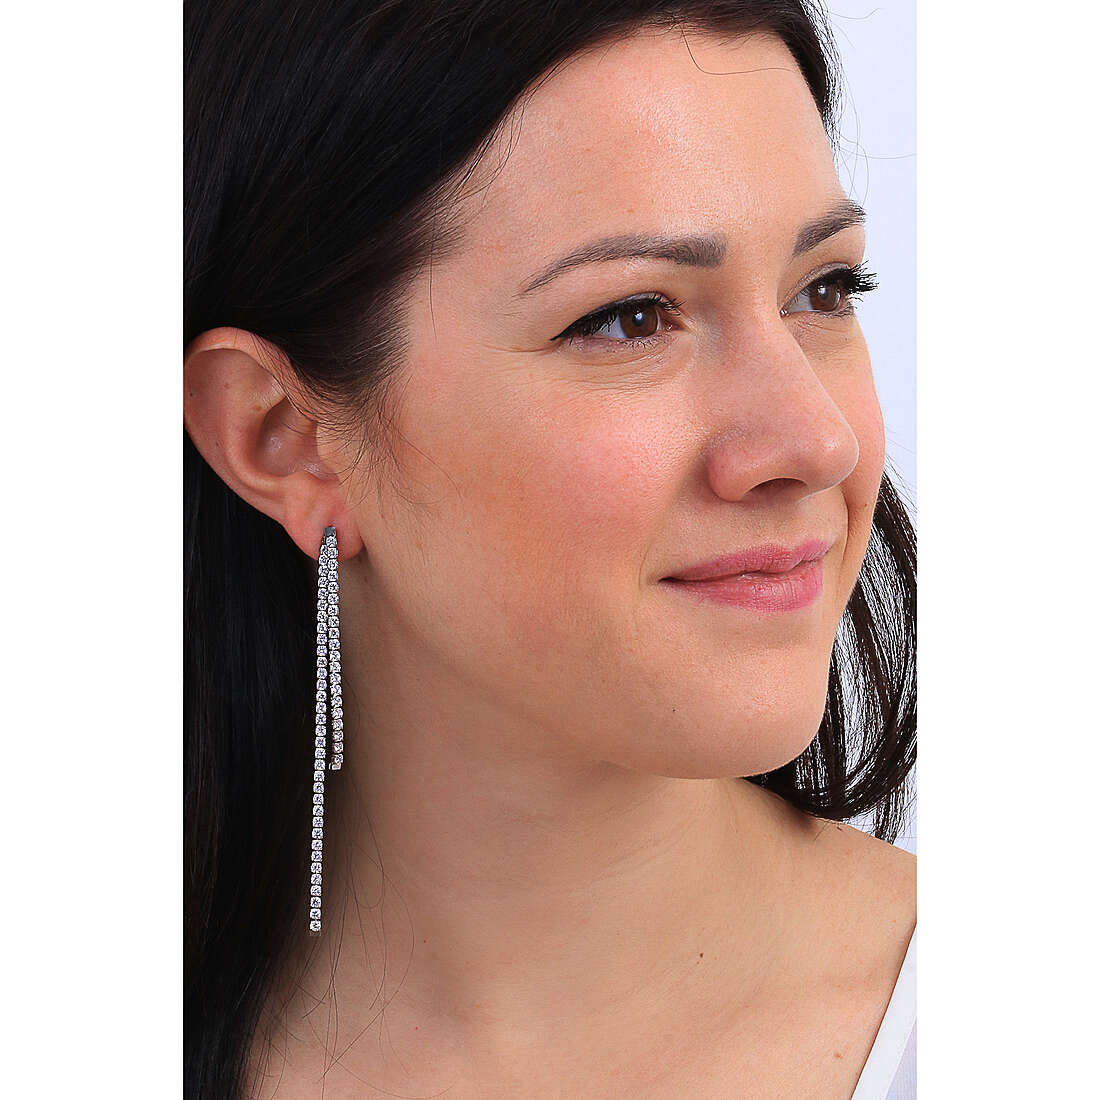 Brosway earrings Affinity woman BEIE003 wearing